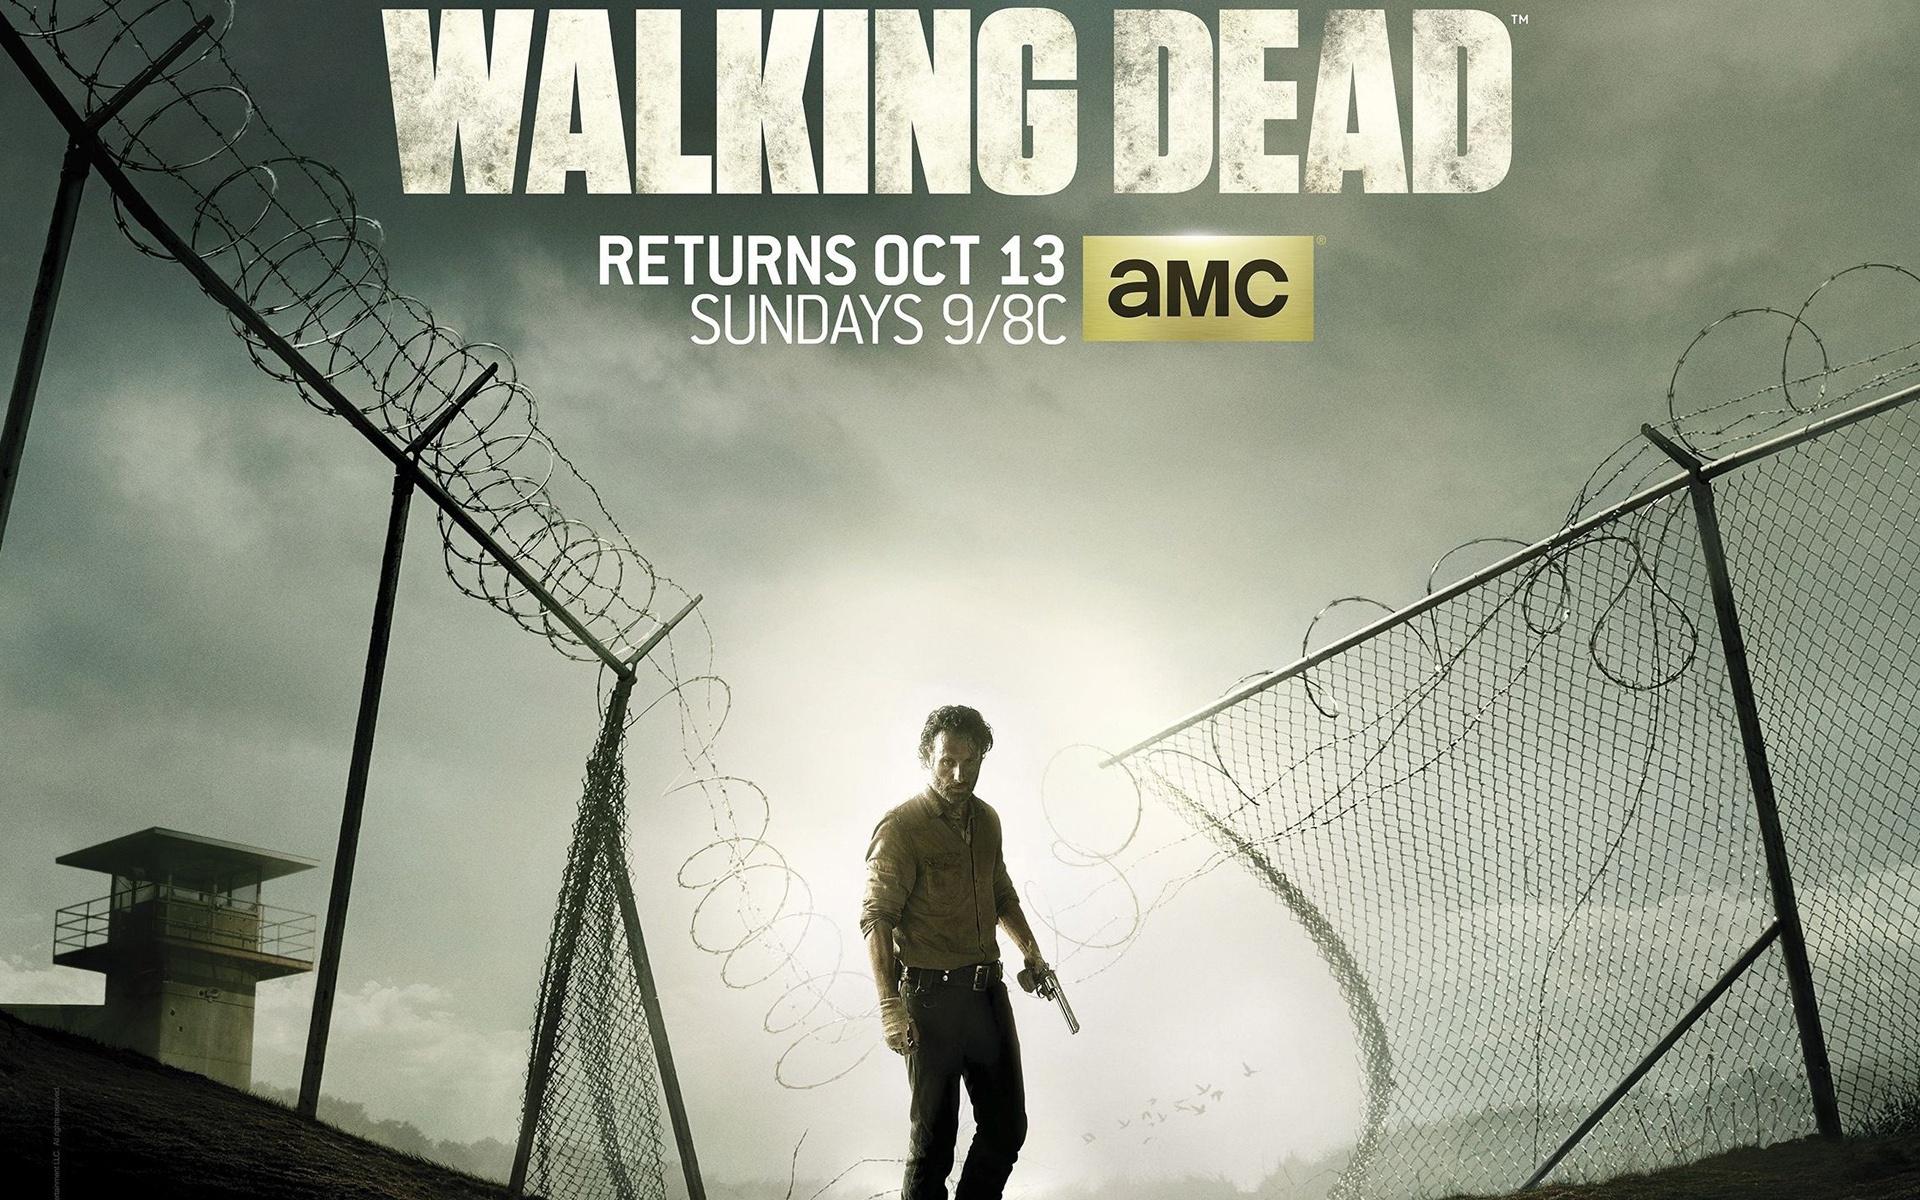 The Walking Dead Season 4 Wallpaper in jpg format for free download